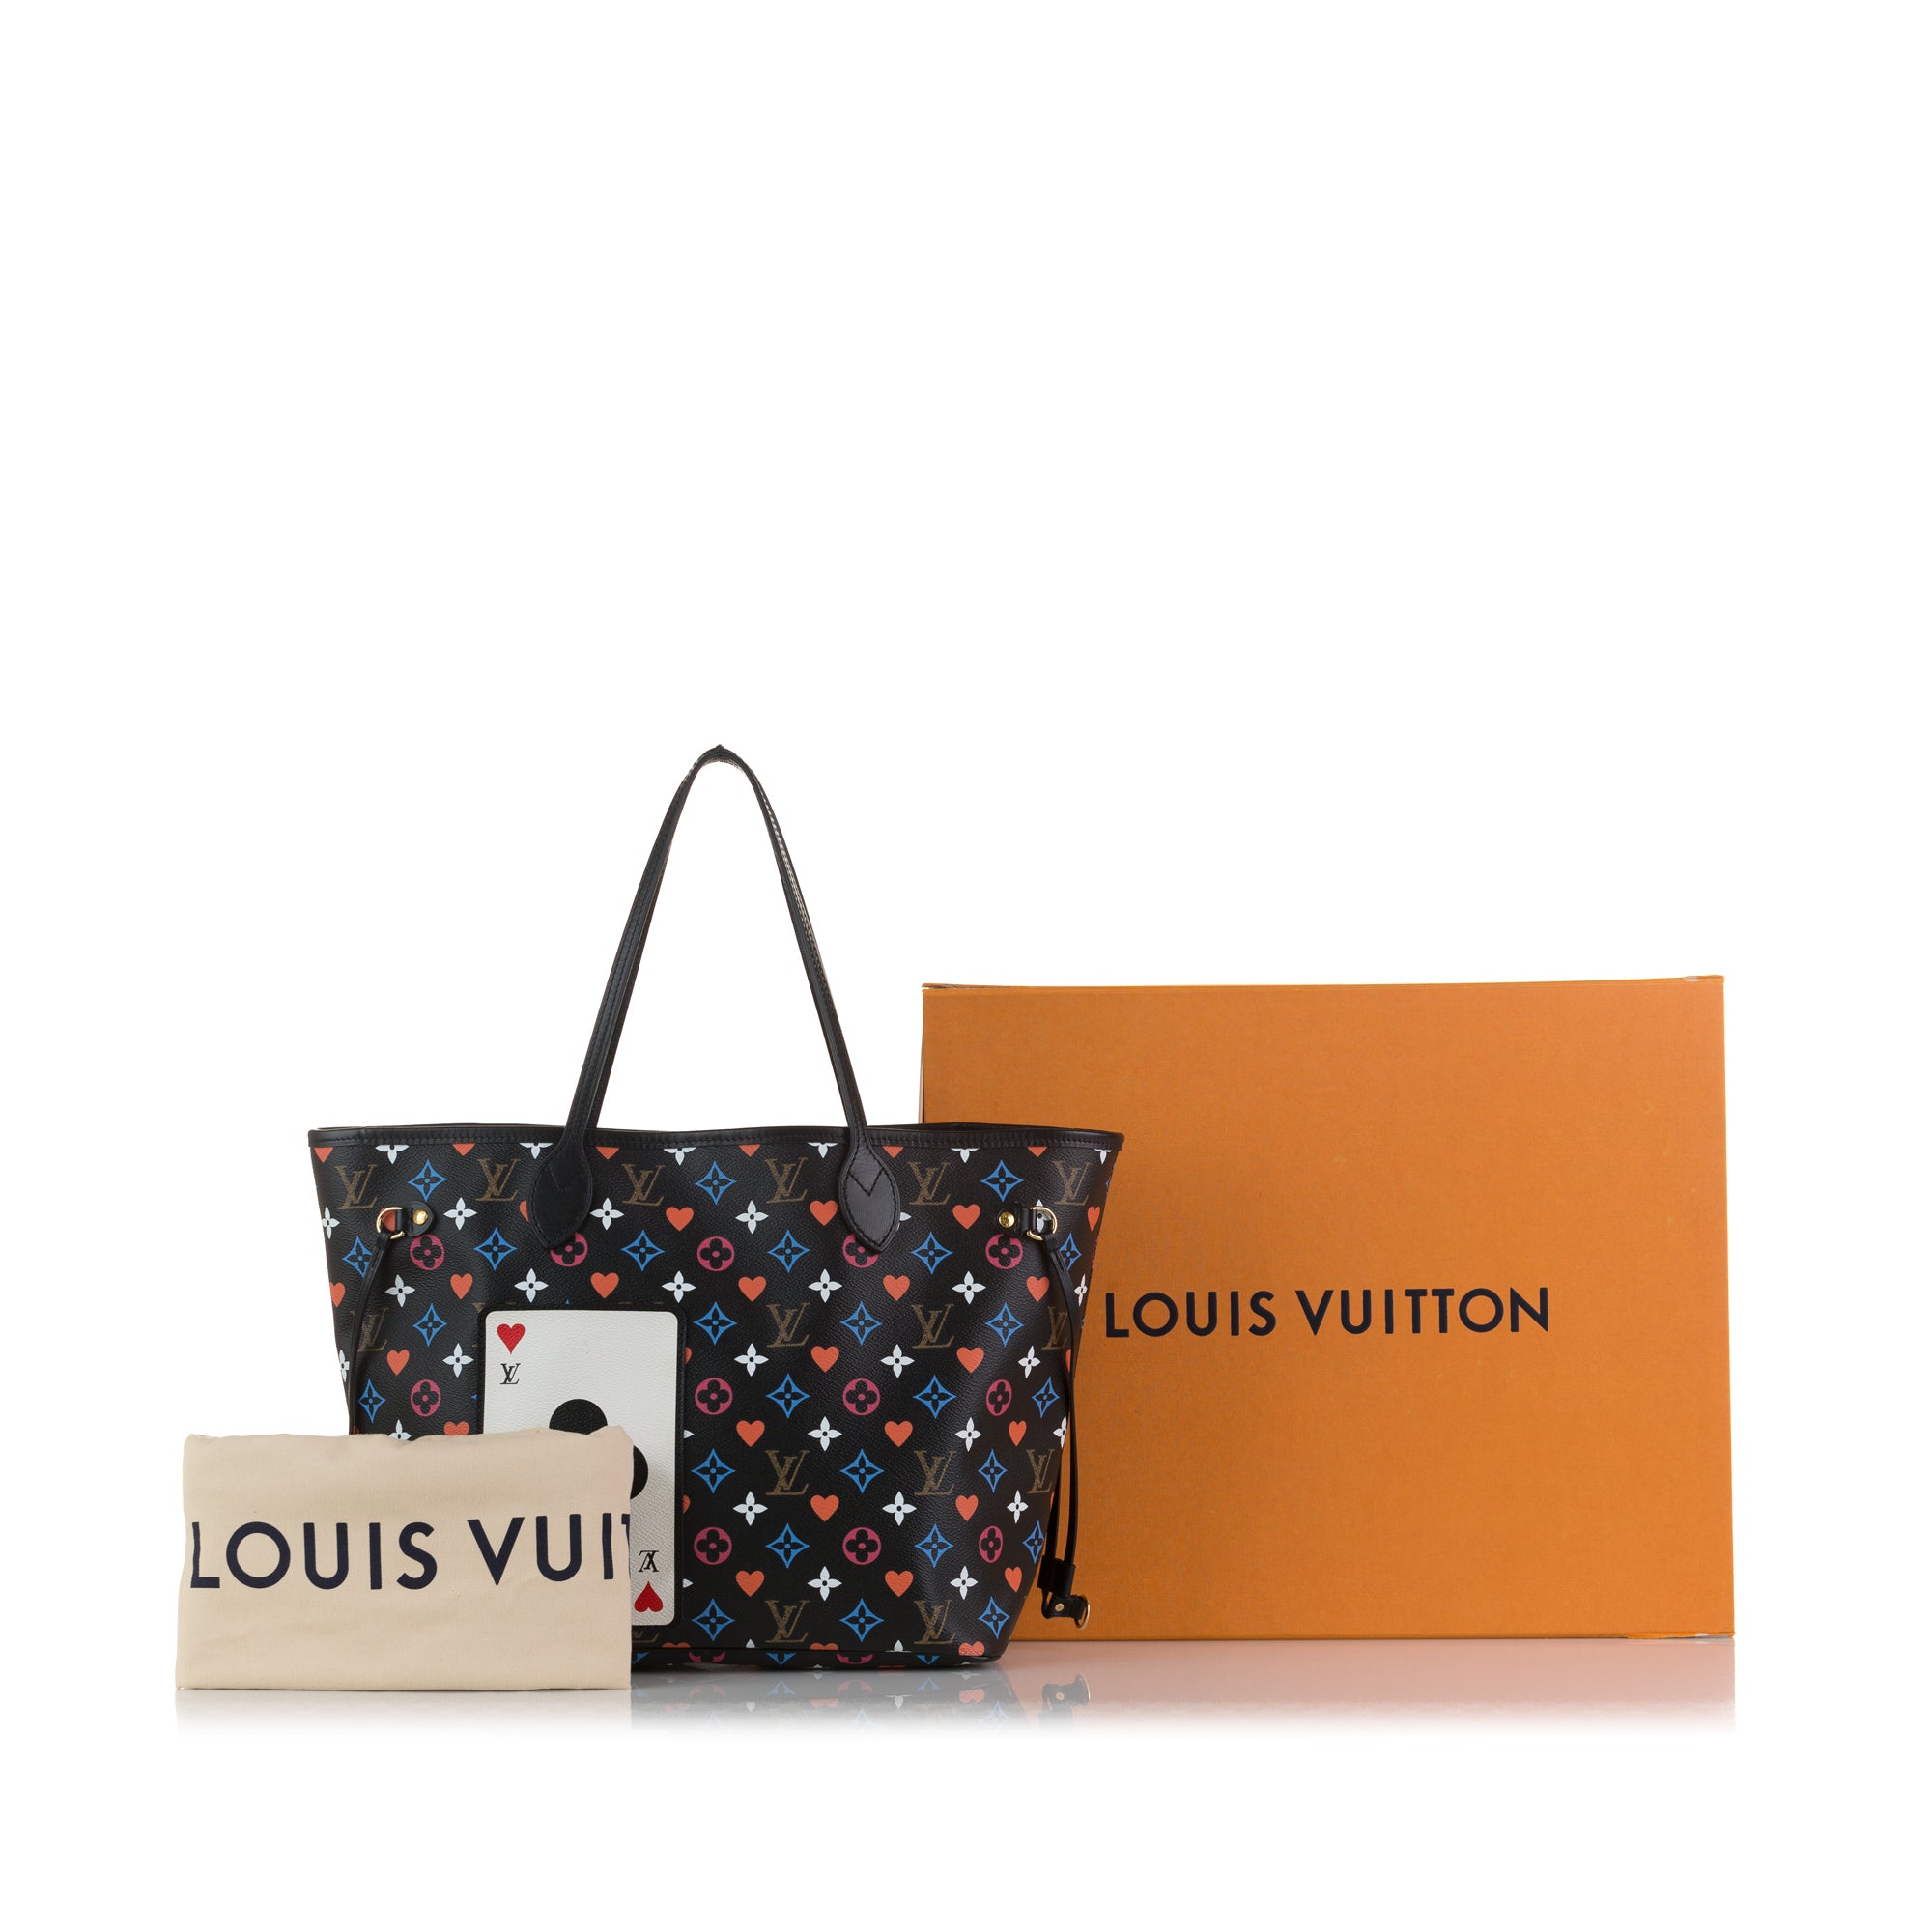 VERKAUFT - Louis Vuitton Keepall 50 Monogram Canvas * Tasche Reisetasche *  wie NEU * TOP